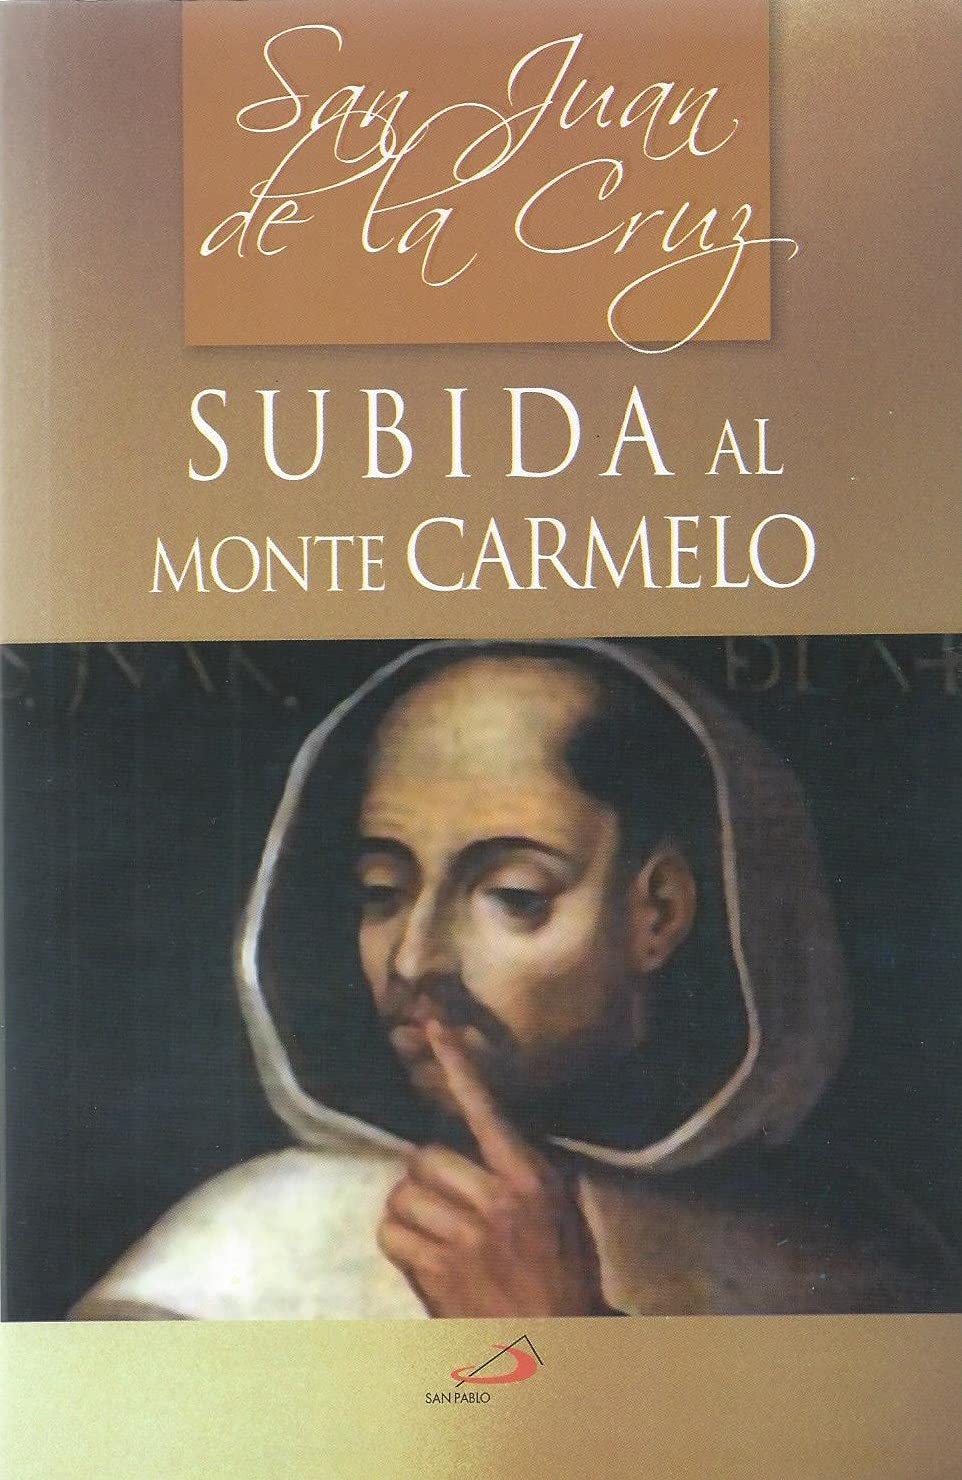 Subida al Monte Carmelo [Paperback] San Juan de la Cruz